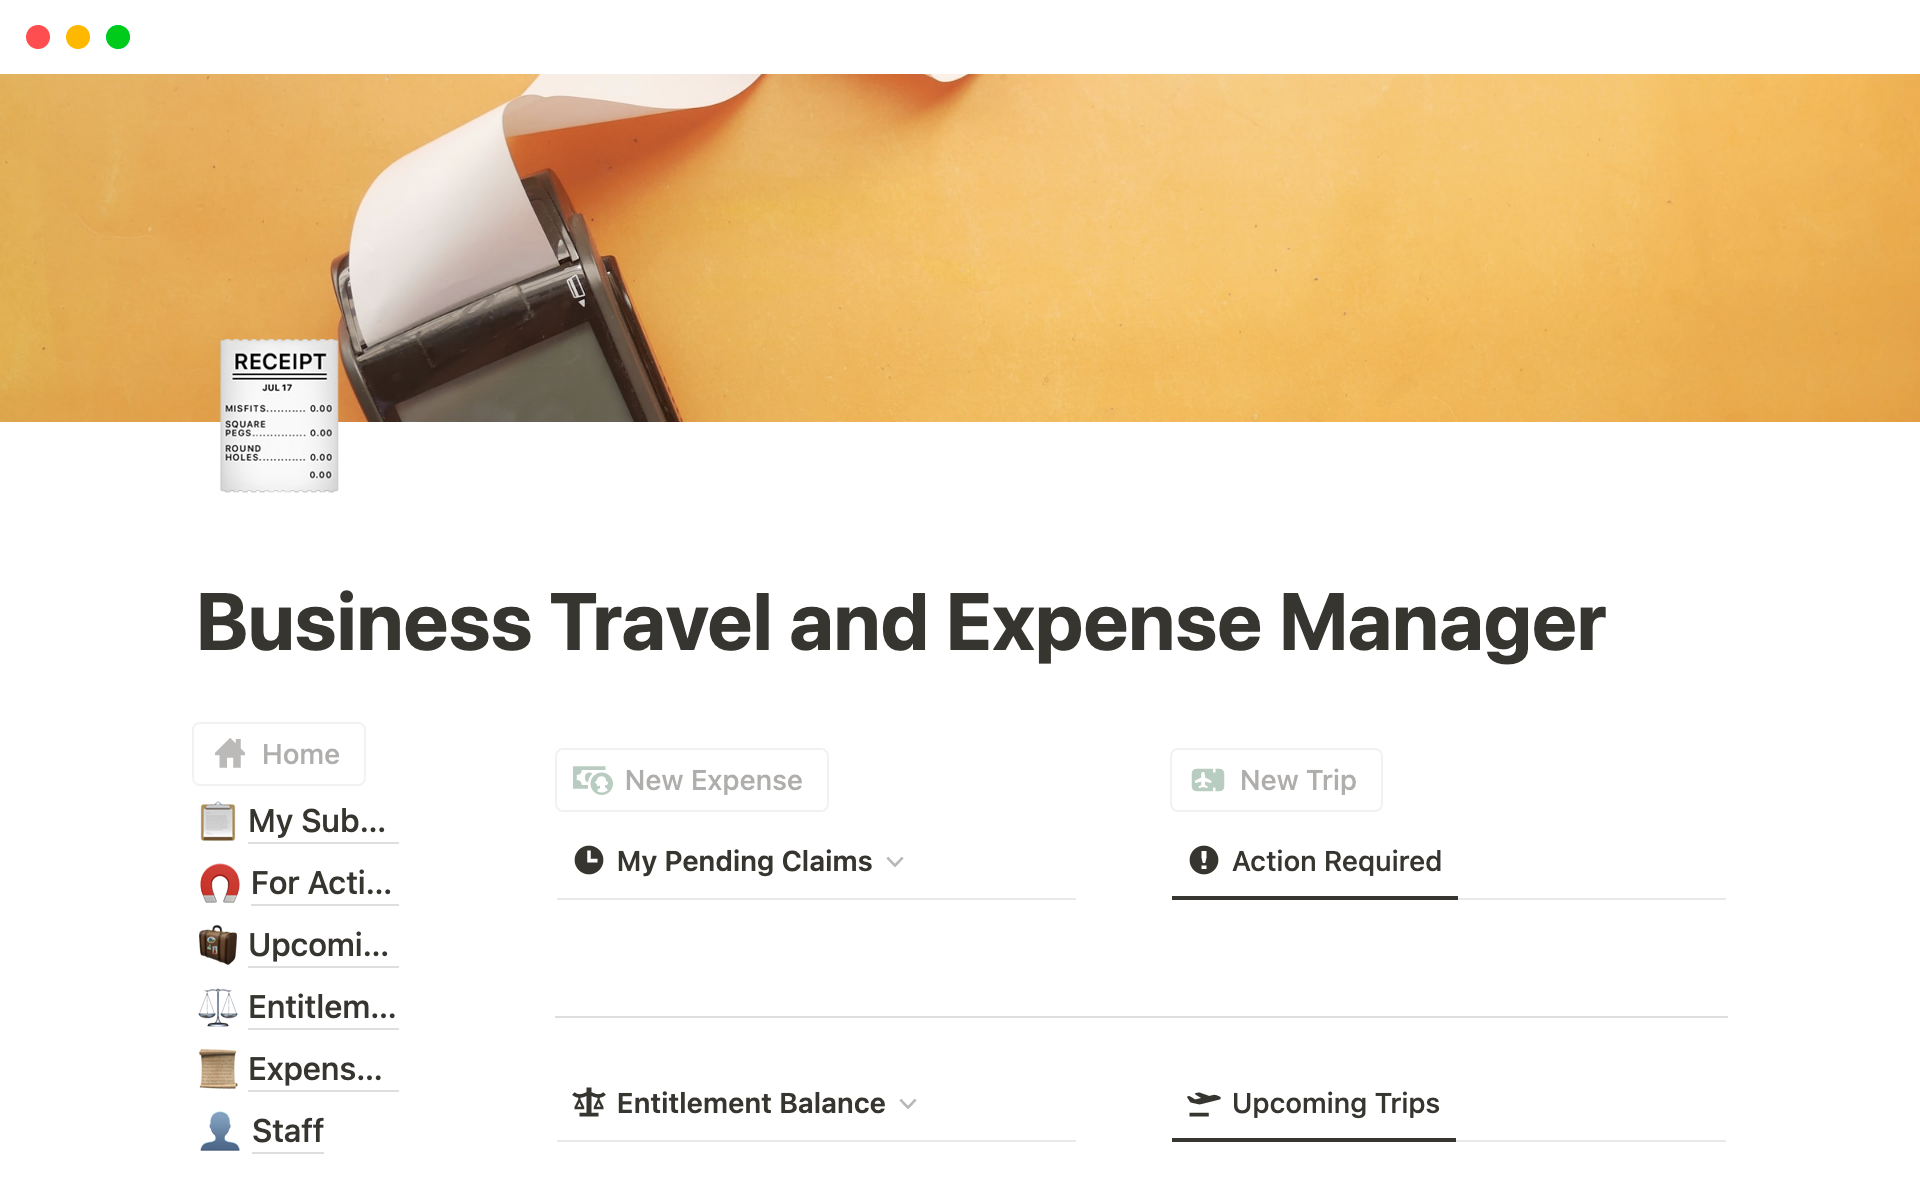 Vista previa de una plantilla para Business Travel and Expense Manager